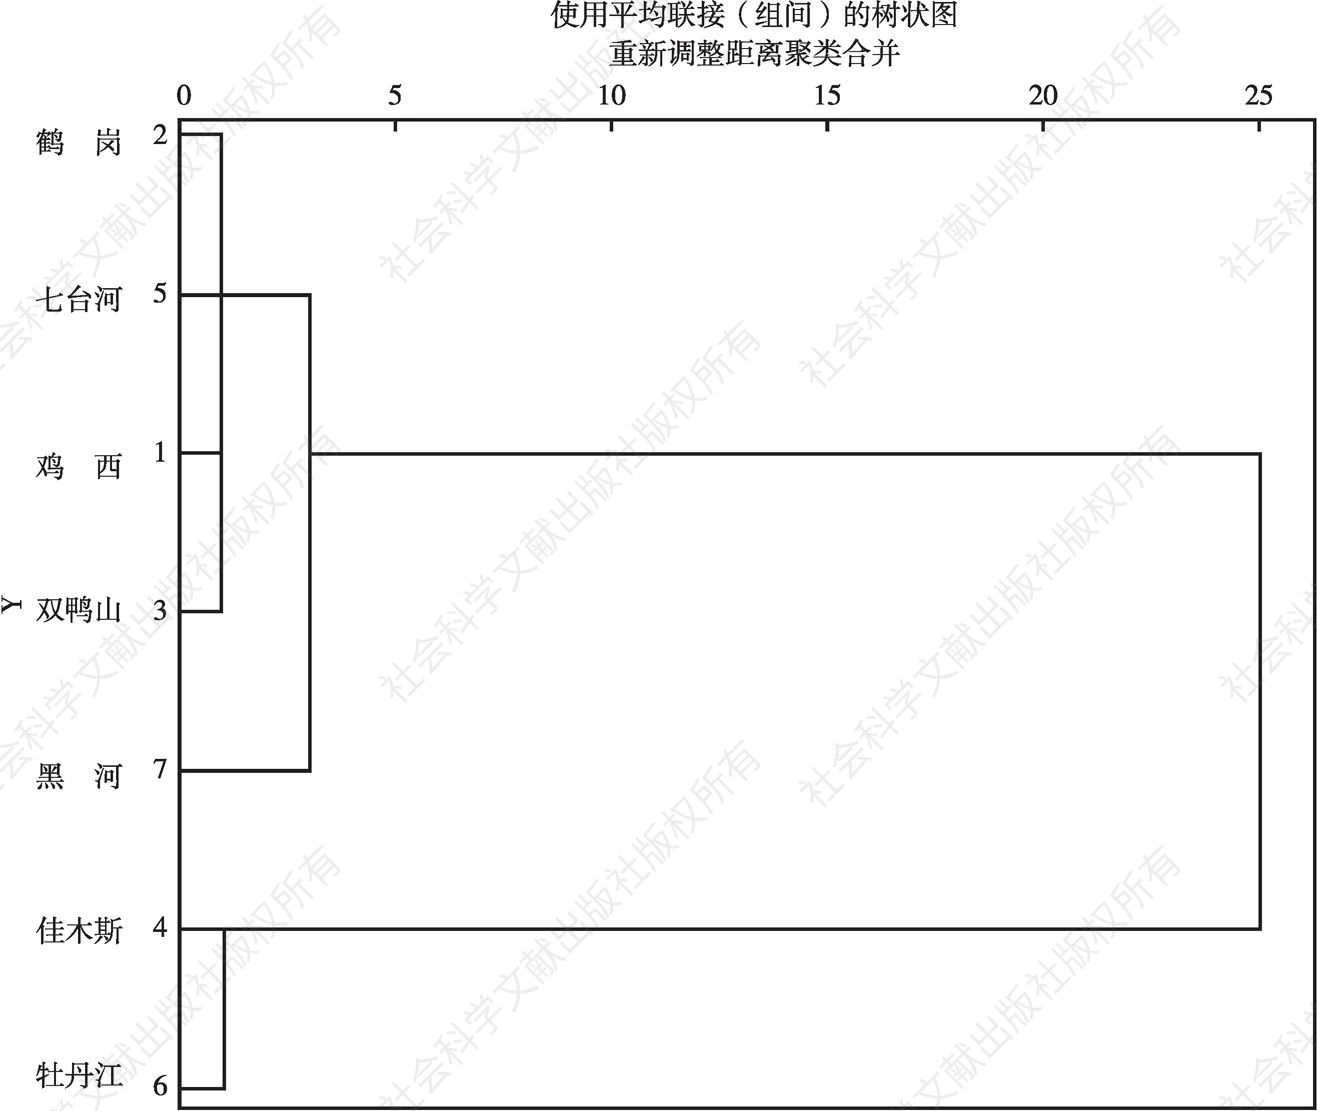 图3-5 黑龙江七地市城市发展水平聚类树状图